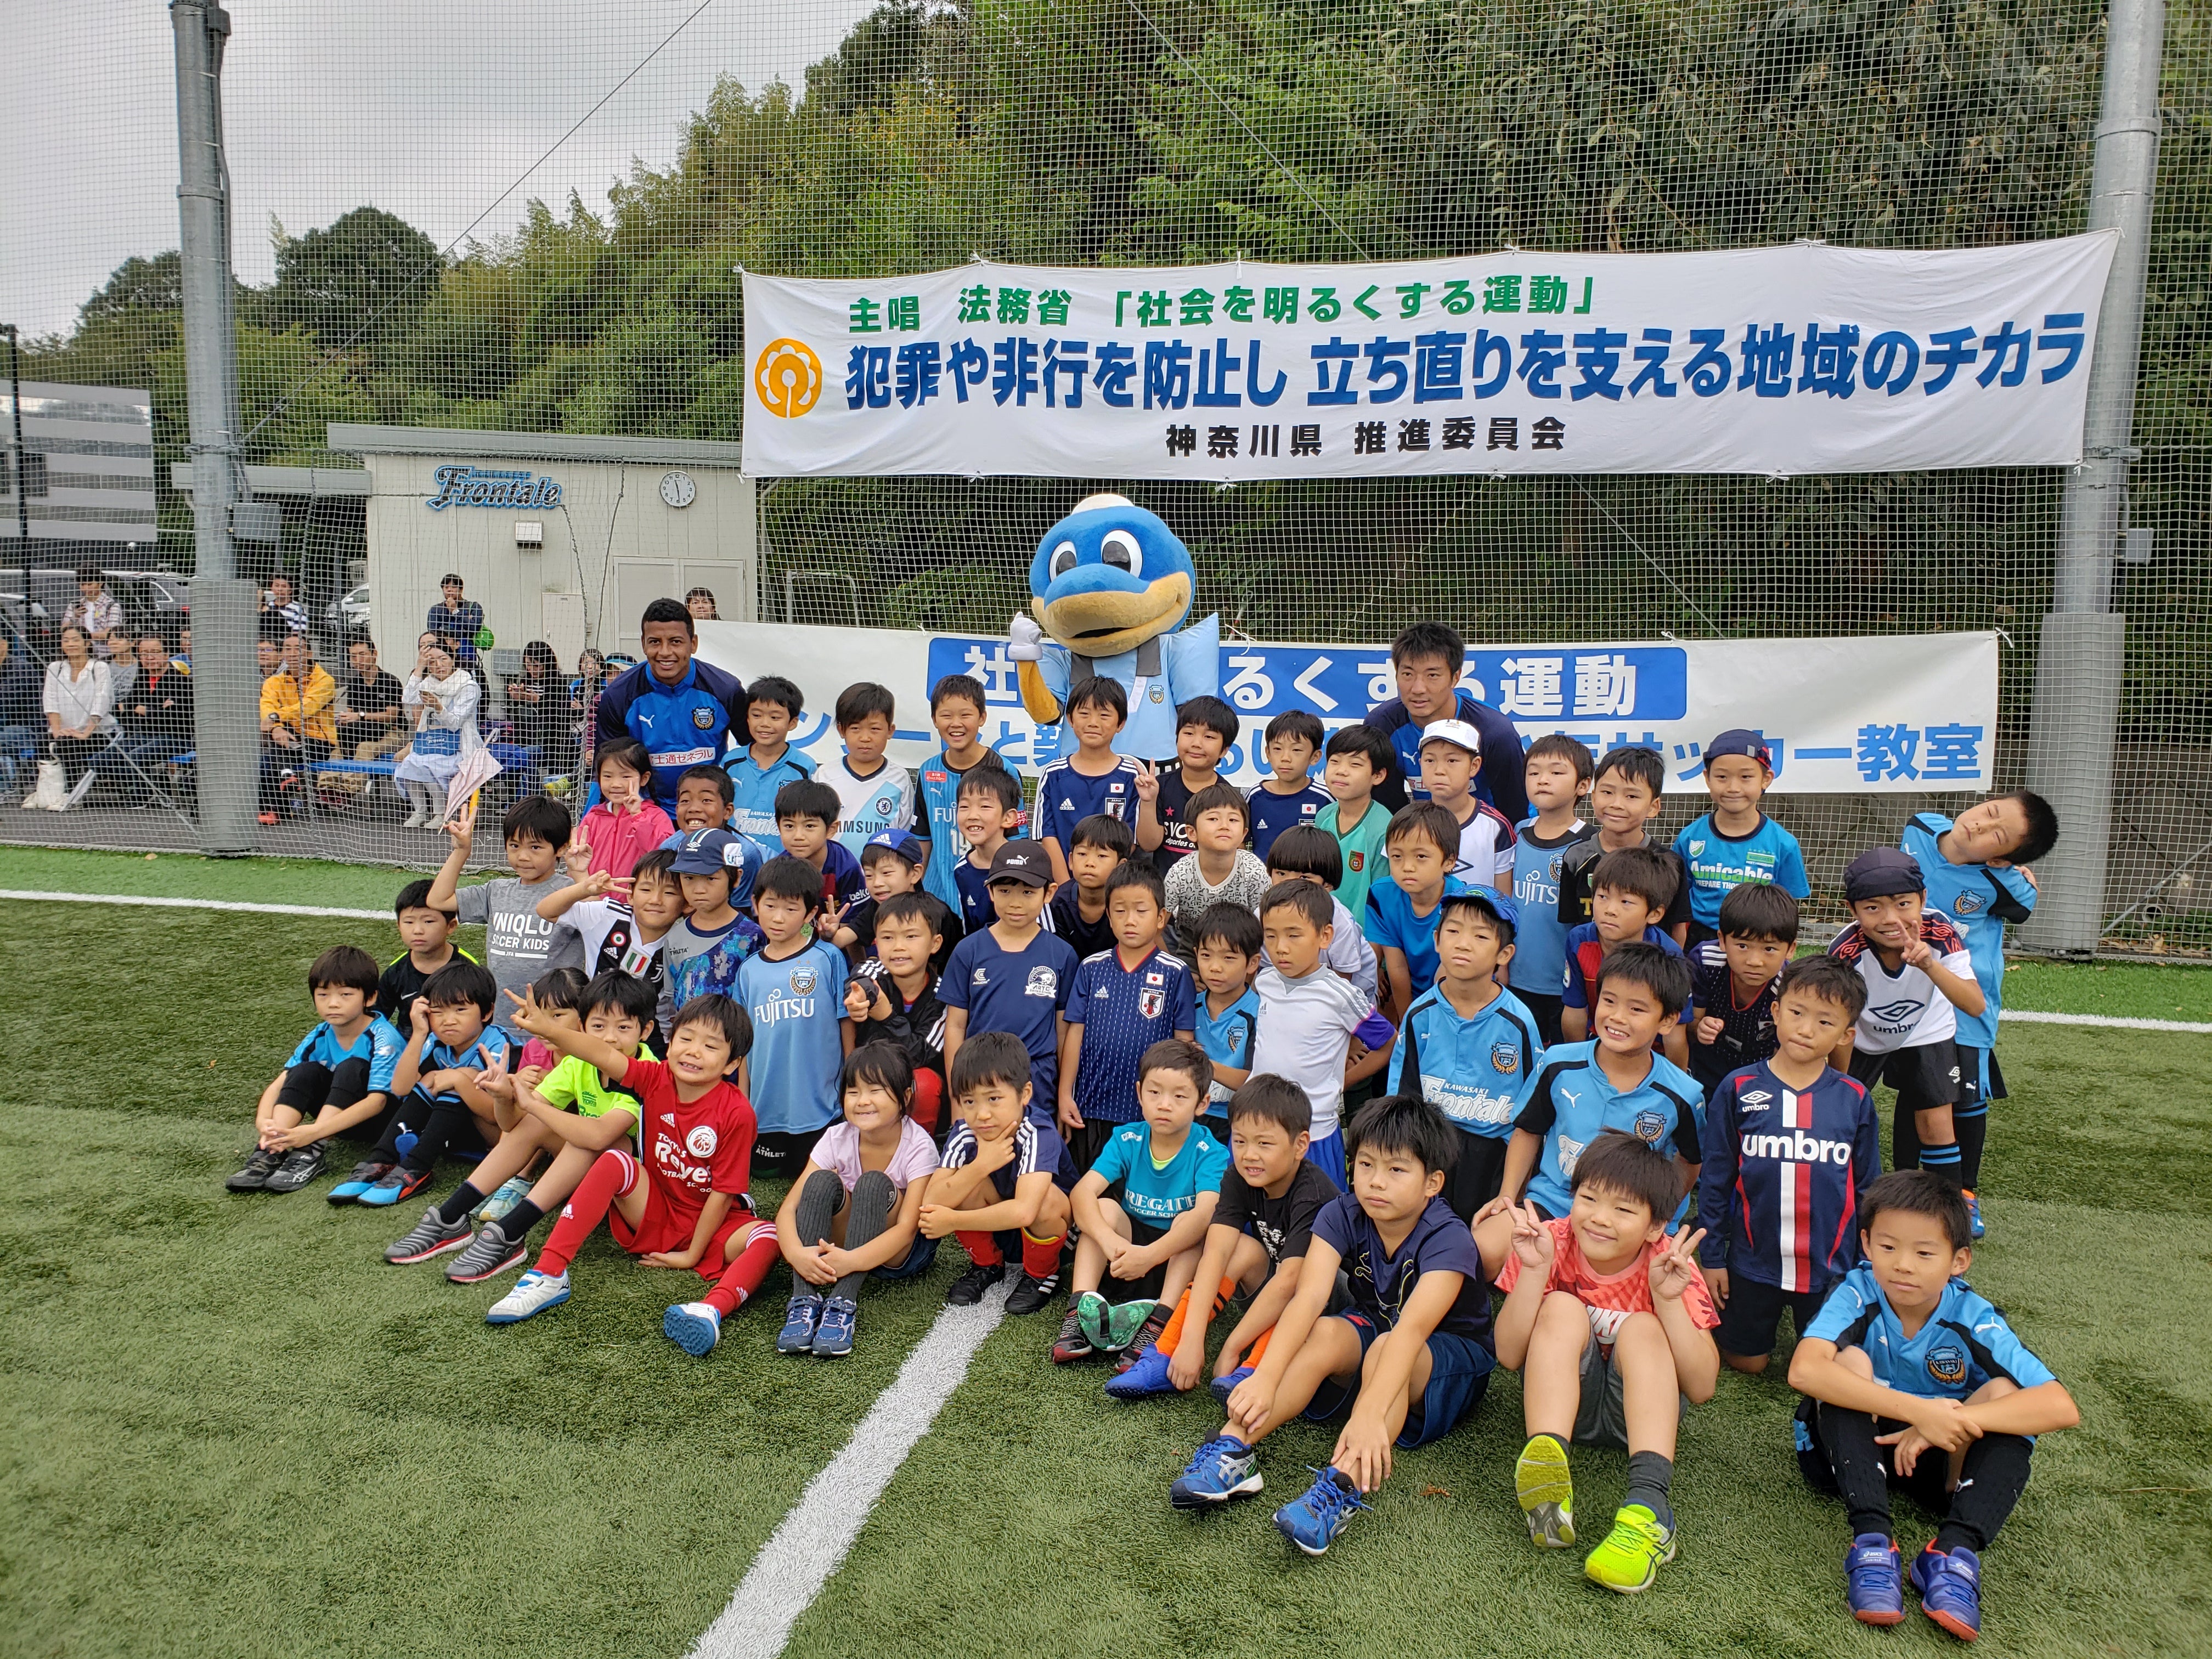 社会を明るくする運動サッカー教室 - 川崎フロンターレ スクール・普及コーチ オフィシャルブログ